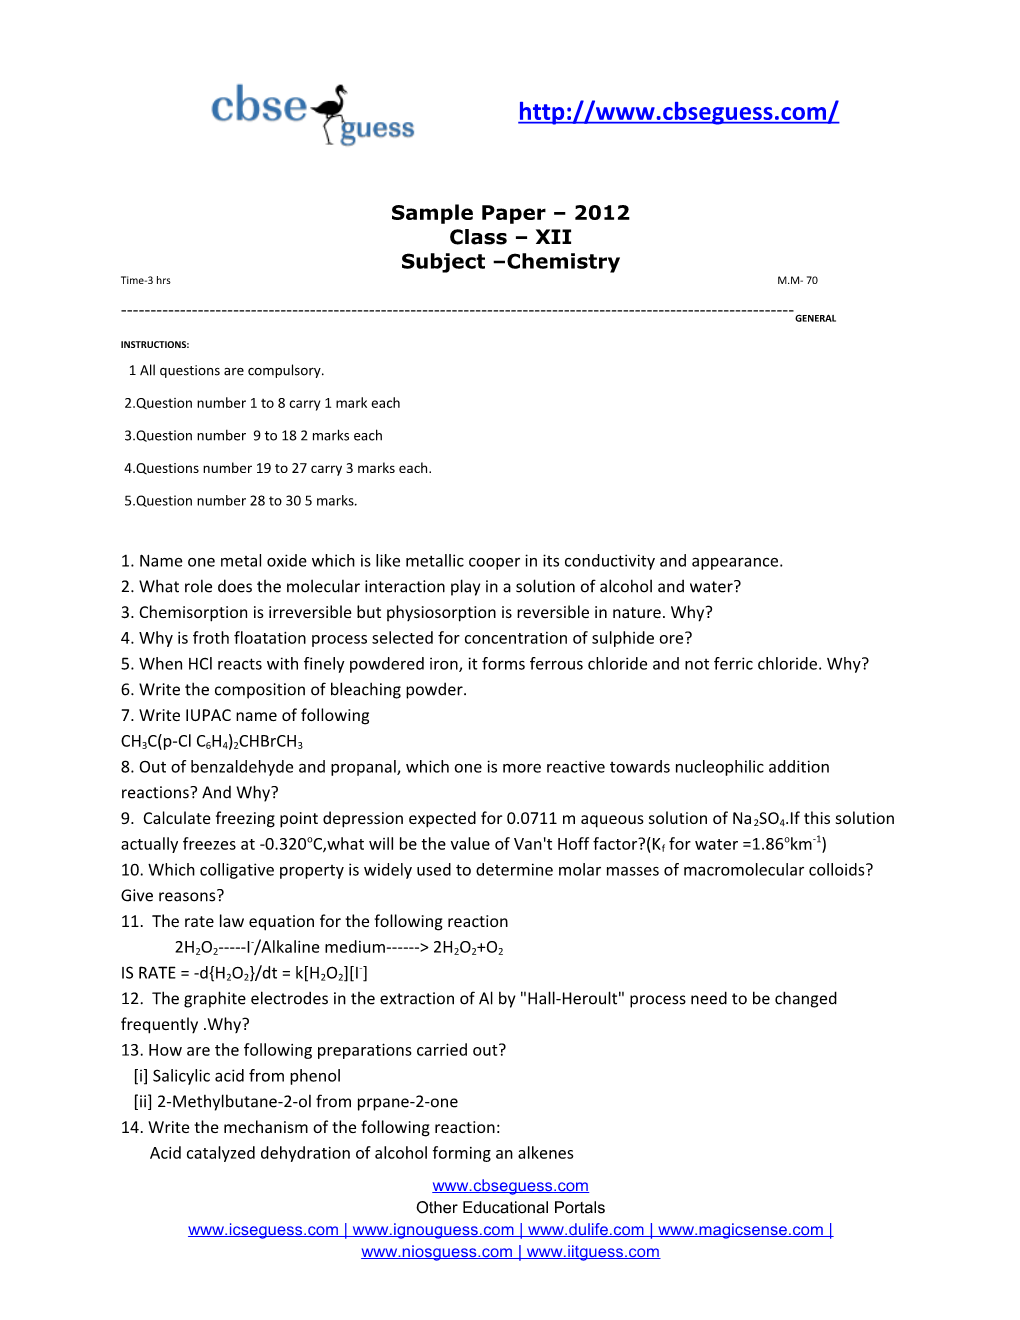 PRE-BOARD Examination-2012